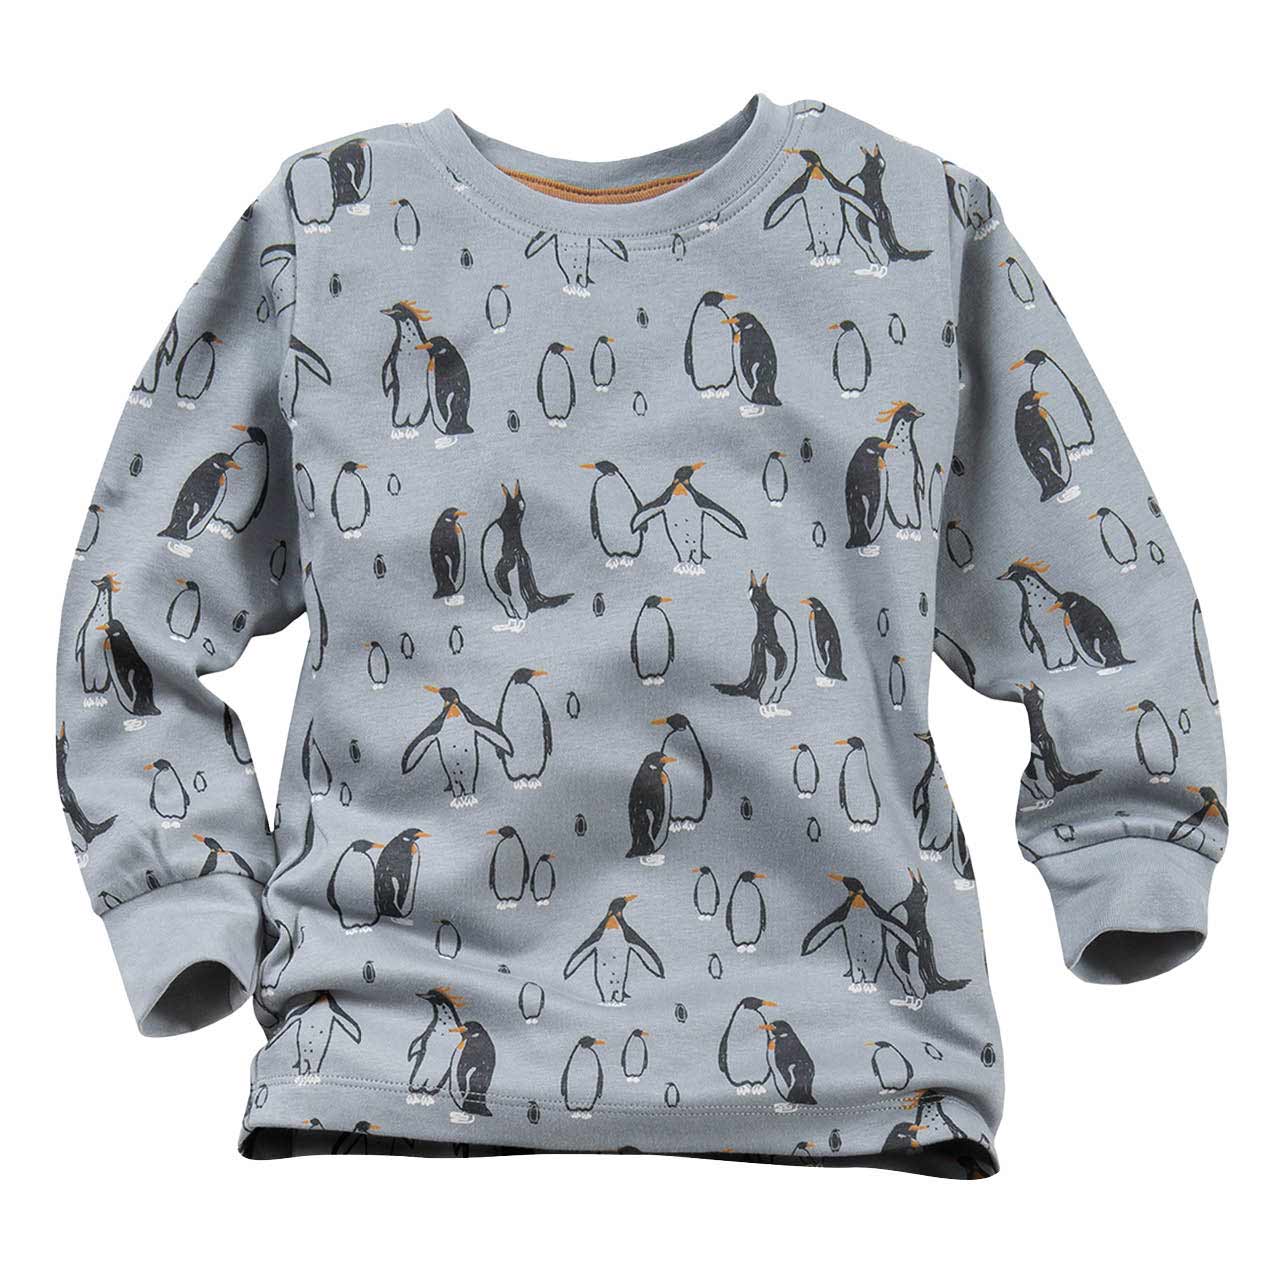 Weicher Schlafanzug Pinguine silbergrau